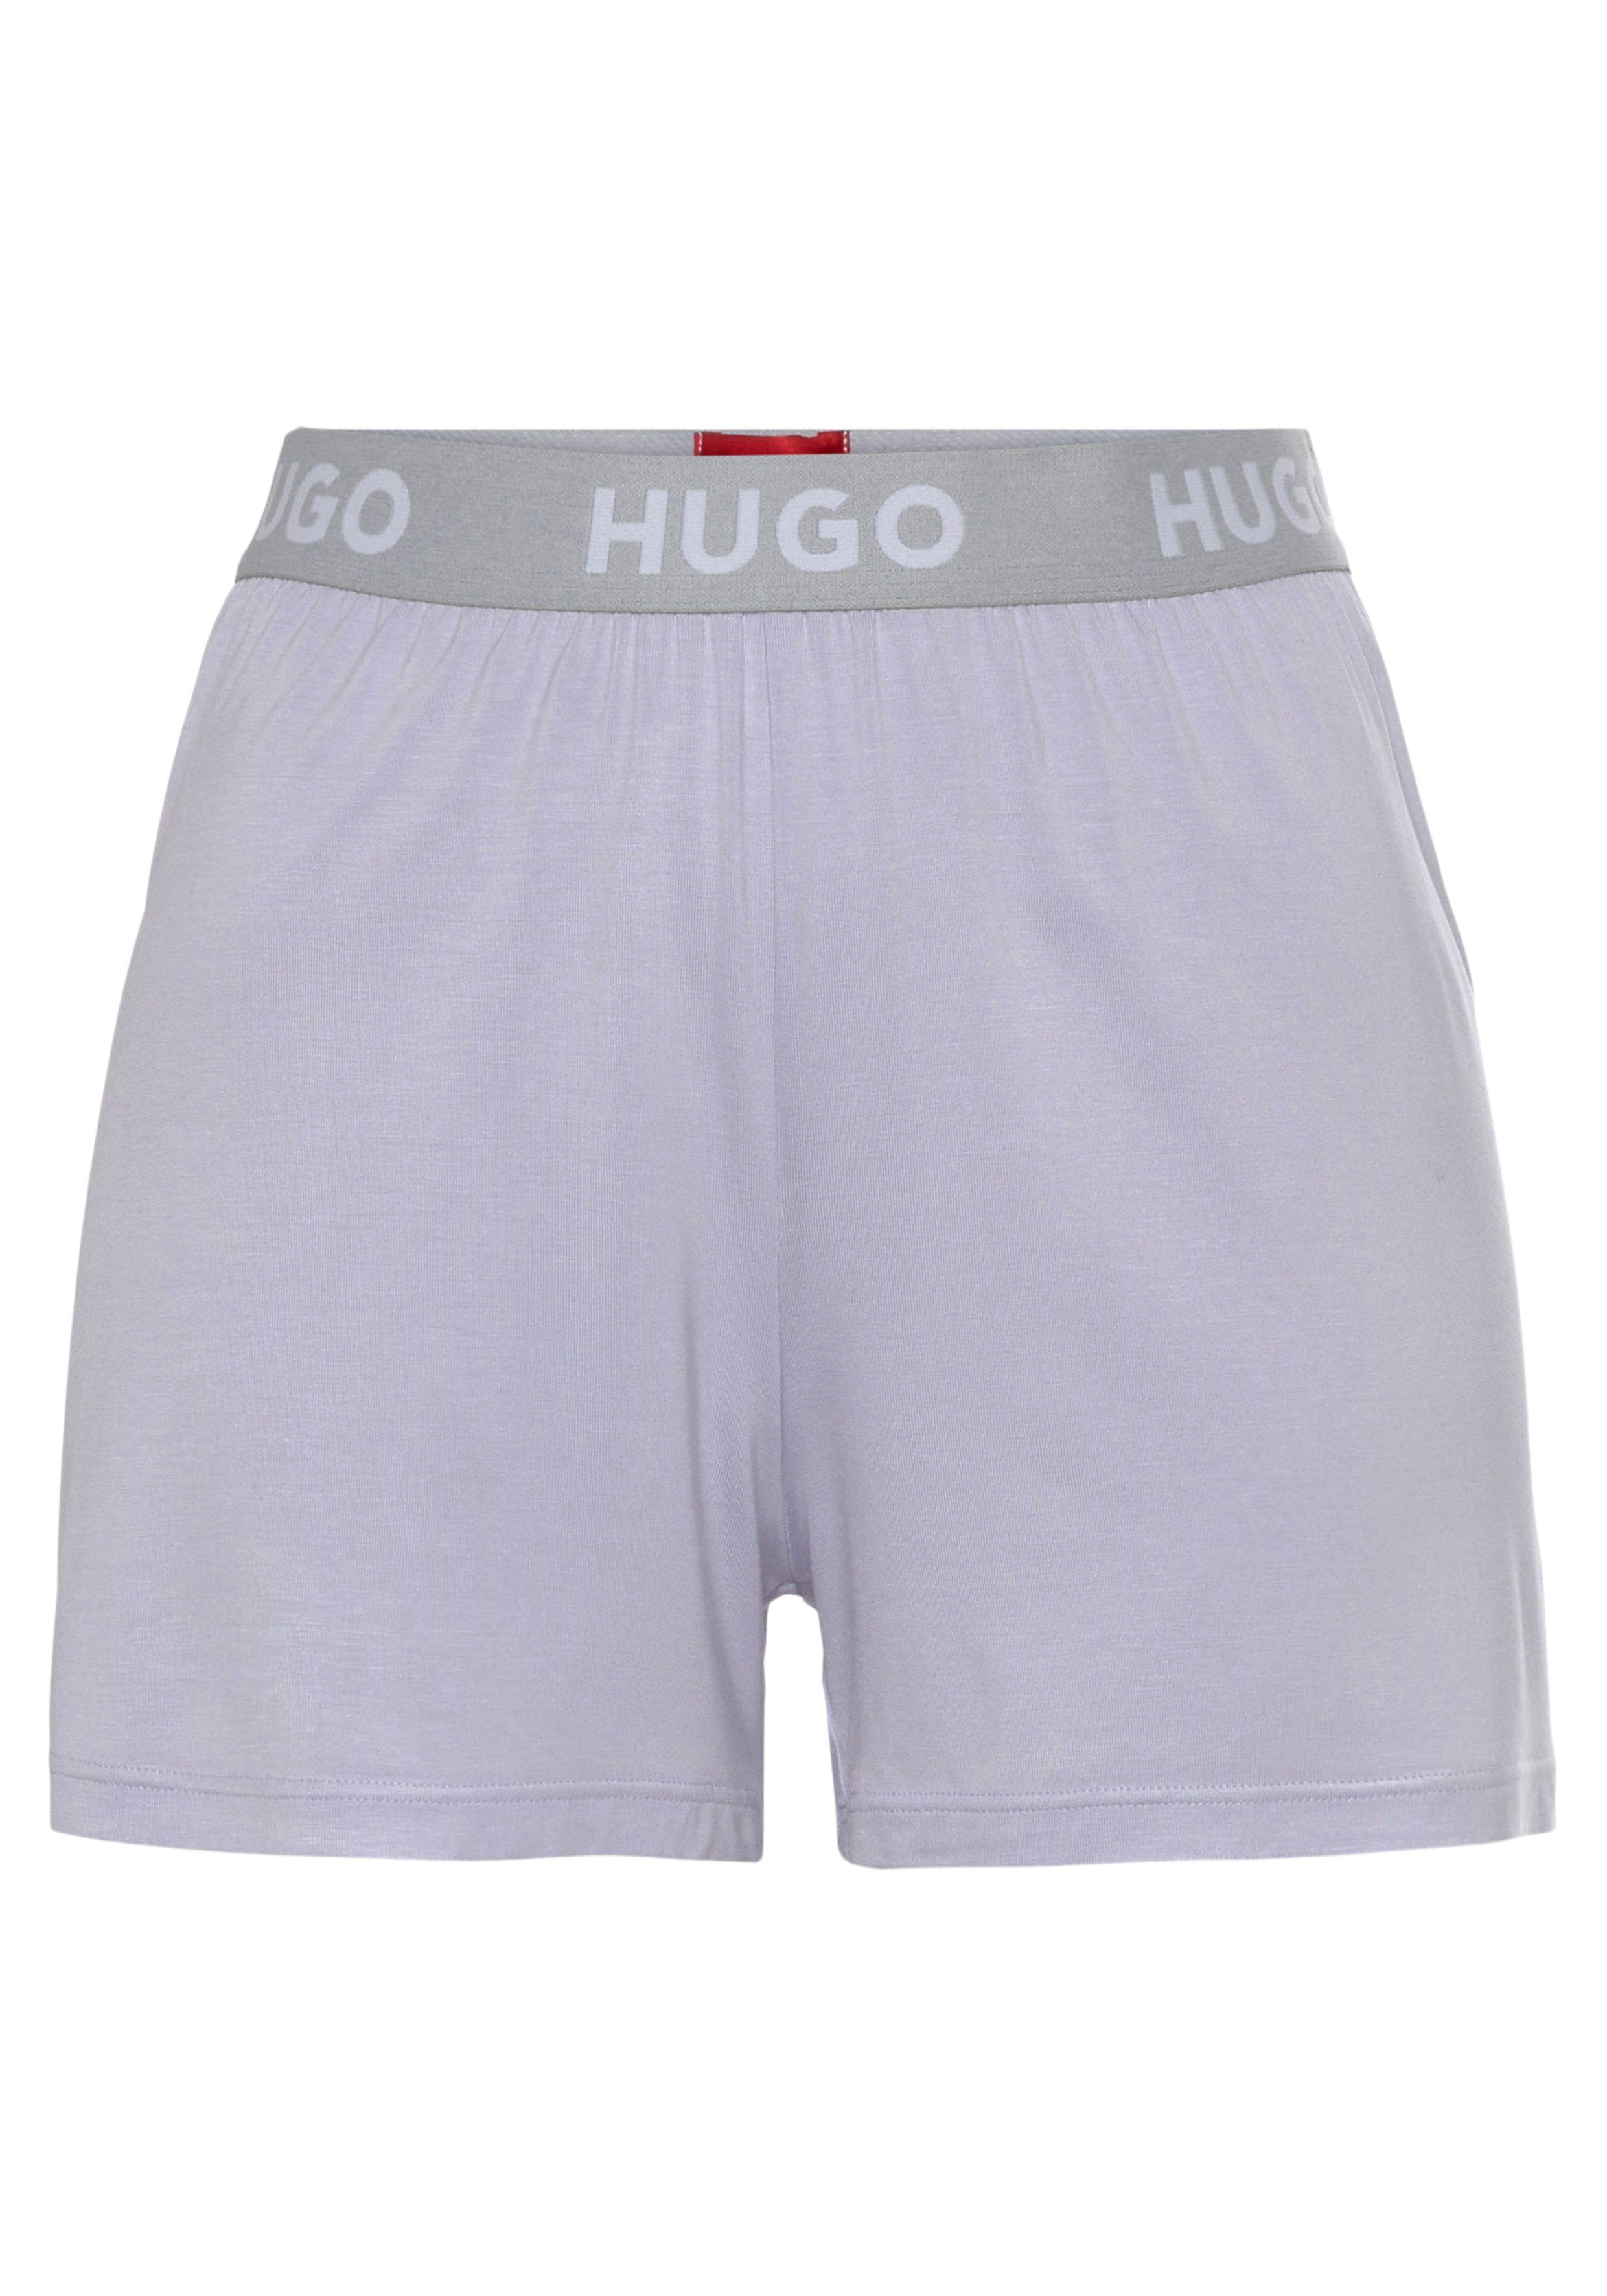 Schlafshorts UNITE_SHORTS mit Hugo Logo-Elastiktape light_pastel_purple535 Bund am HUGO